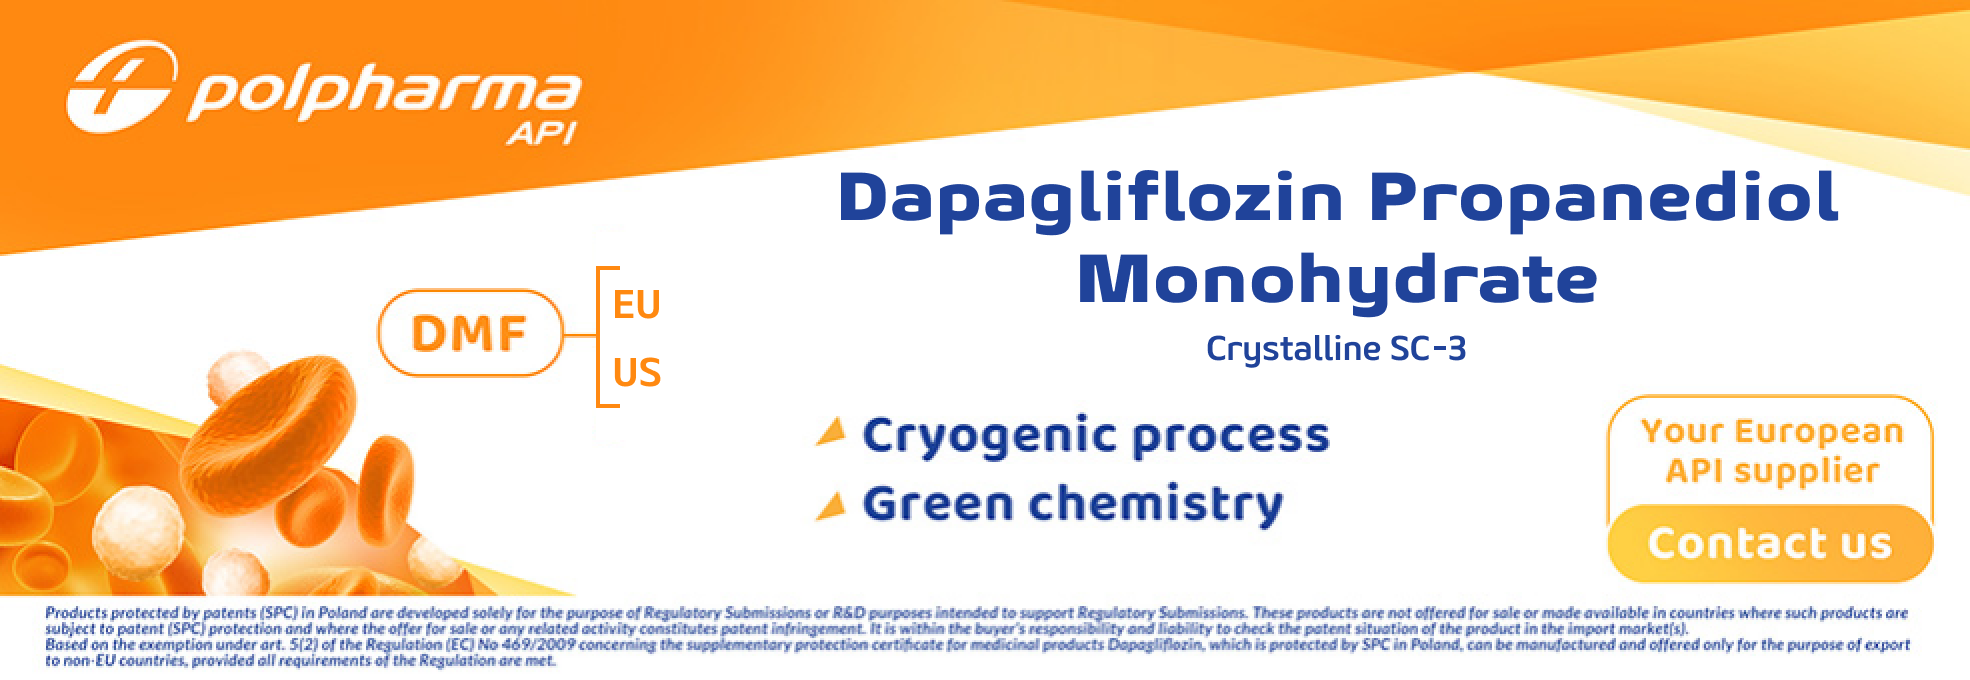 Polpharma Dapagliflozin Propanediol Monohydrate